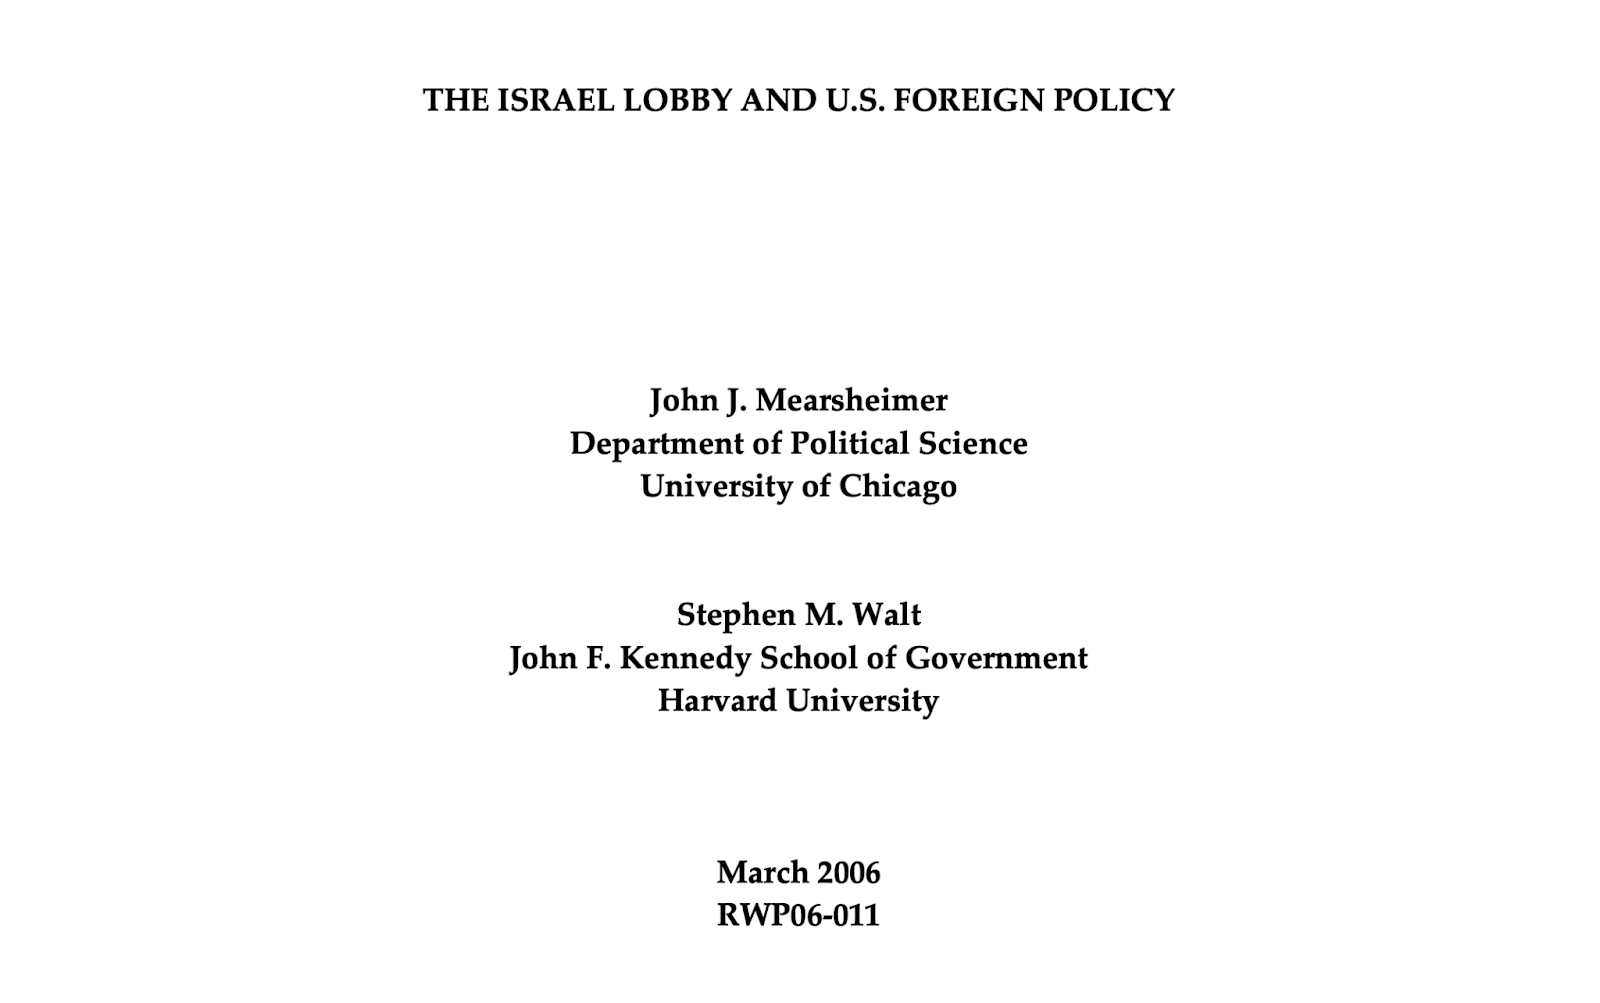  ورقة بحثية نُشرت عام 2006 بعنوان "اللوبي الإسرائيلي والسياسة الخارجية الأميركية"